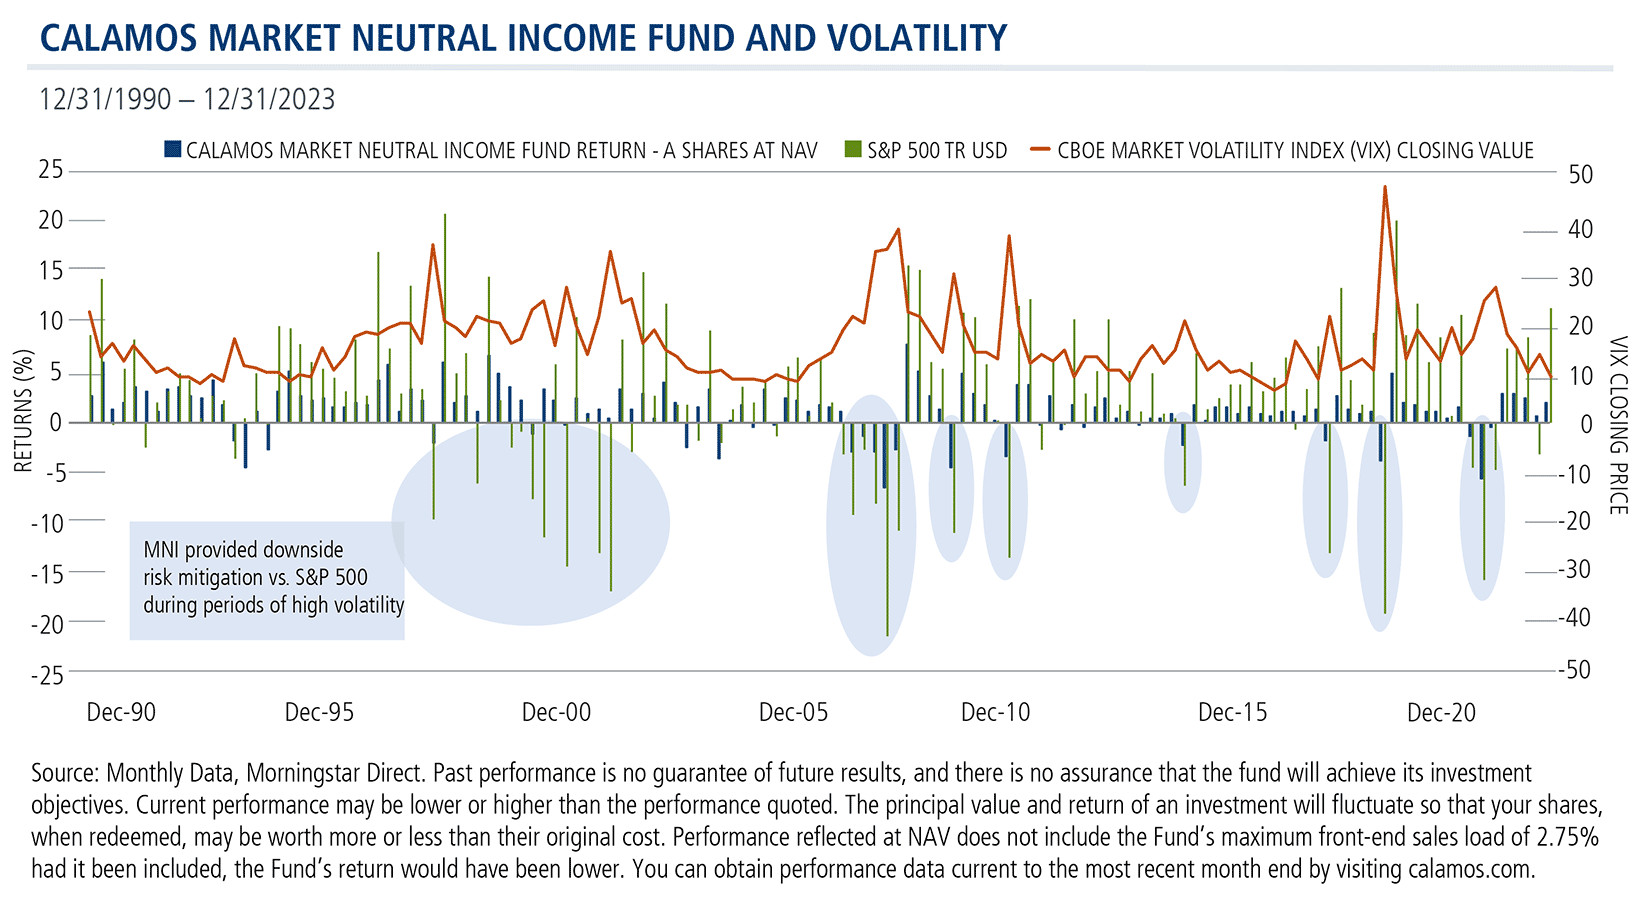 cmnix reslient to volatility